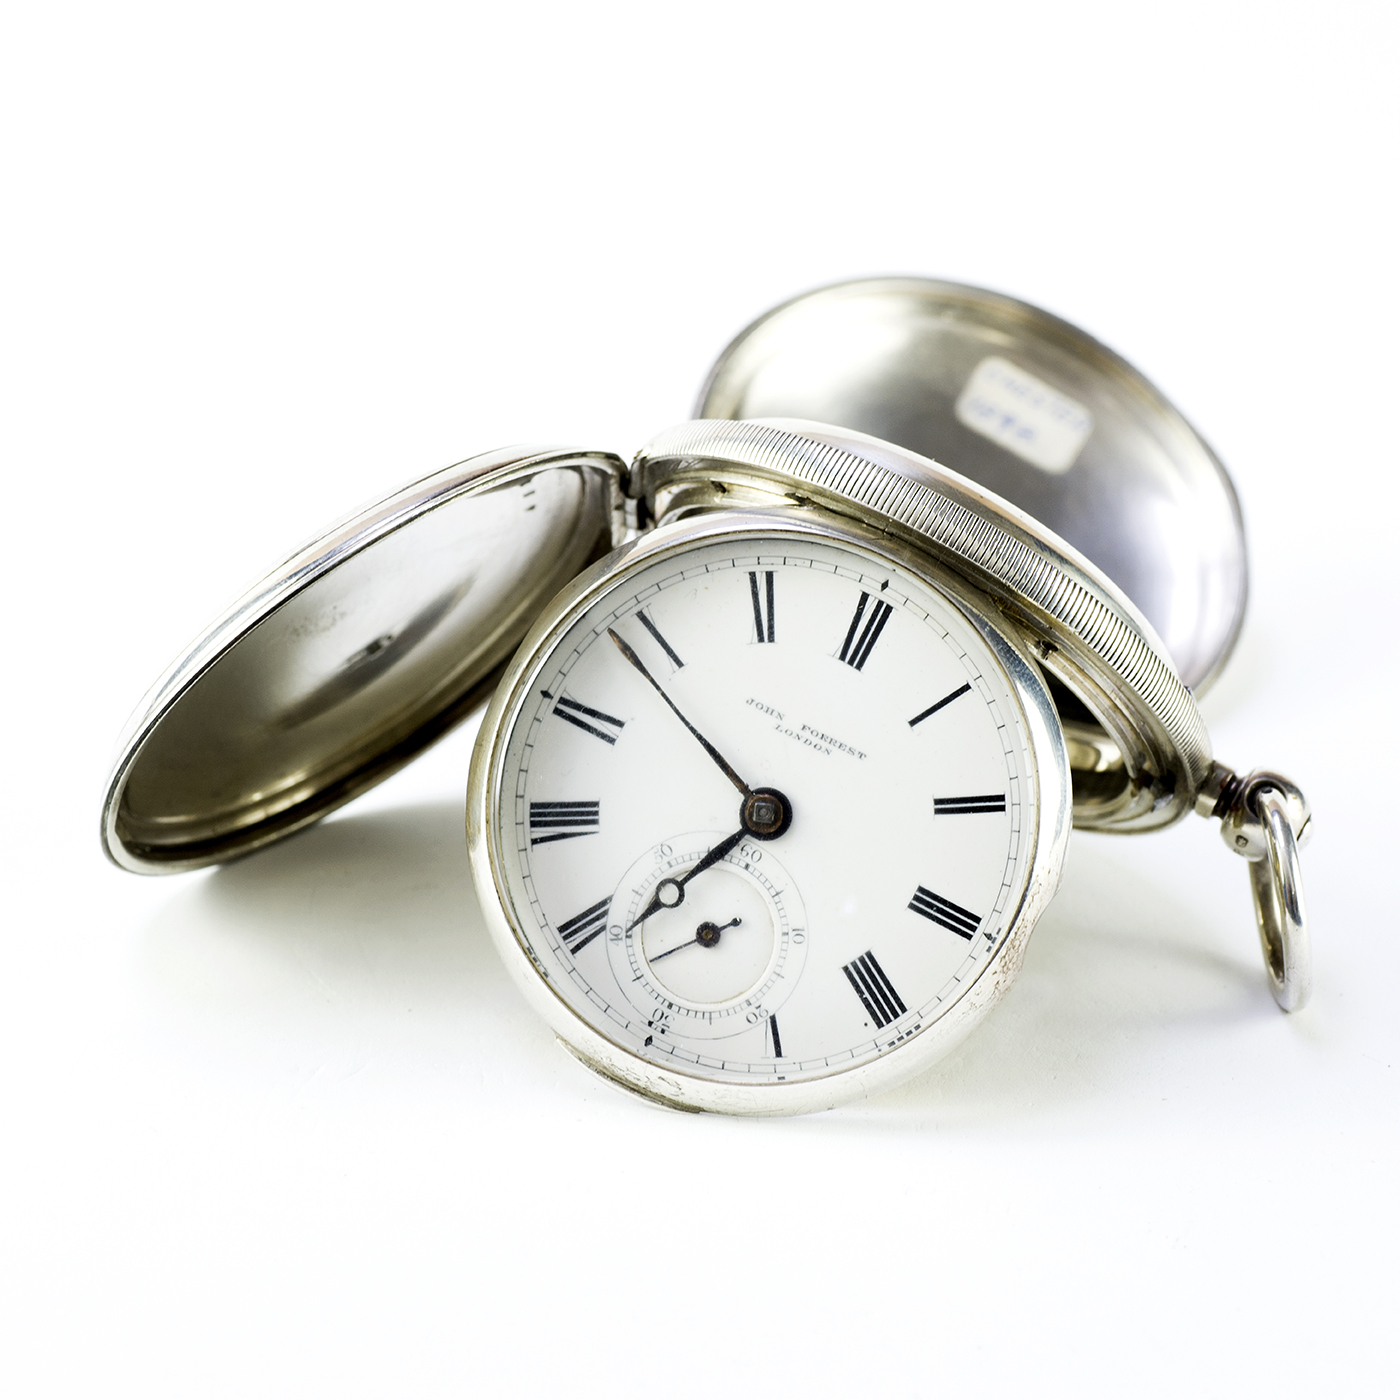 JOHN FORREST (London). Reloj de Bolsillo, saboneta, Half Fusee (Semicatalino). Londres, año 1898.